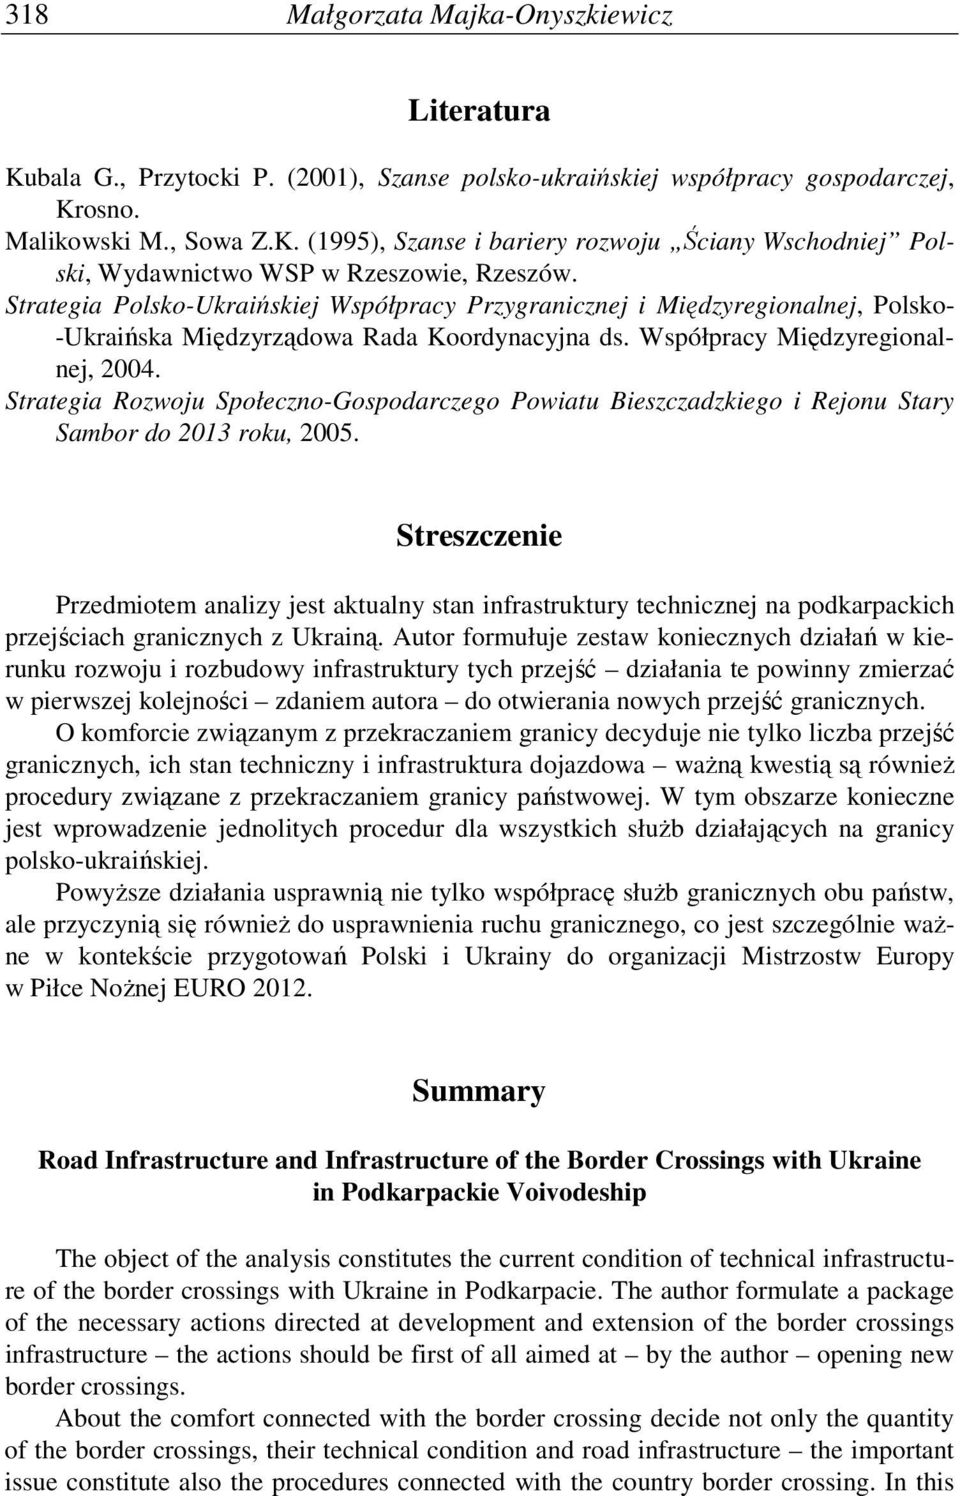 Strategia Rozwoju Społeczno-Gospodarczego Powiatu Bieszczadzkiego i Rejonu Stary Sambor do 2013 roku, 2005.